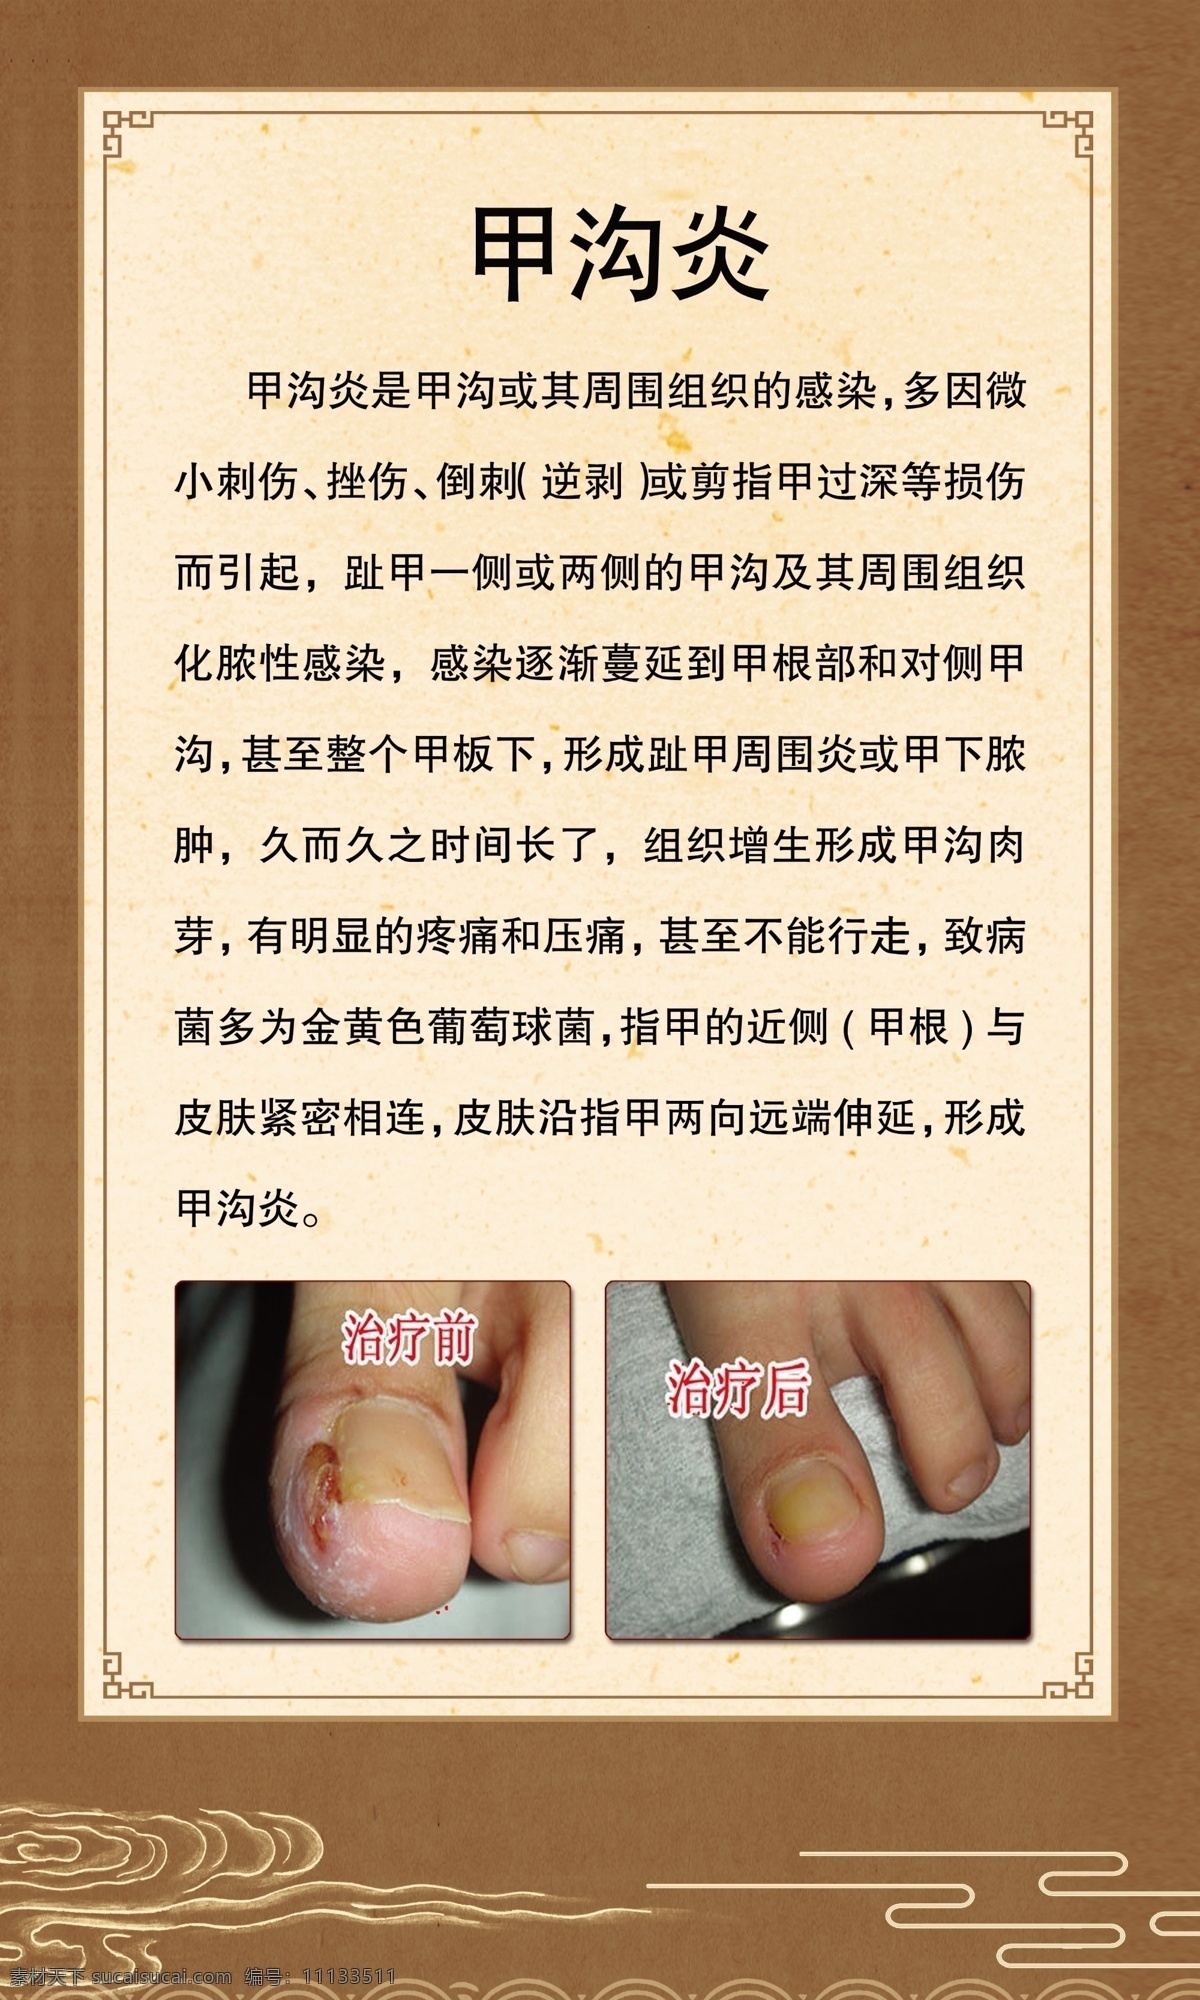 甲沟炎 足疗 足浴 泡脚 灰指甲 脚指 中医 中药 室内广告设计